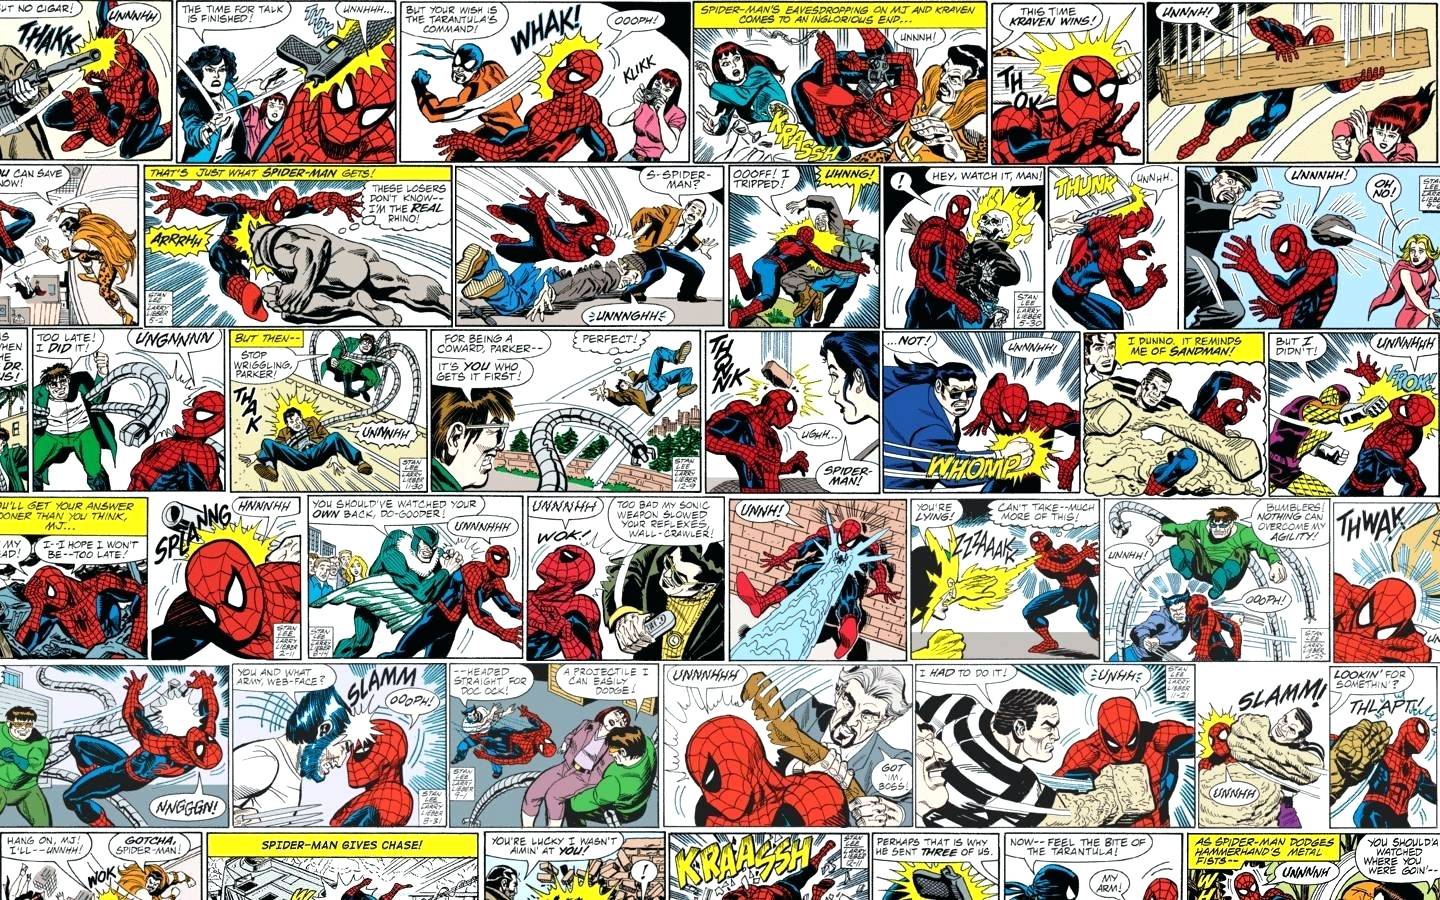 Comic Strip Wallpaper Free Comic Strip Background